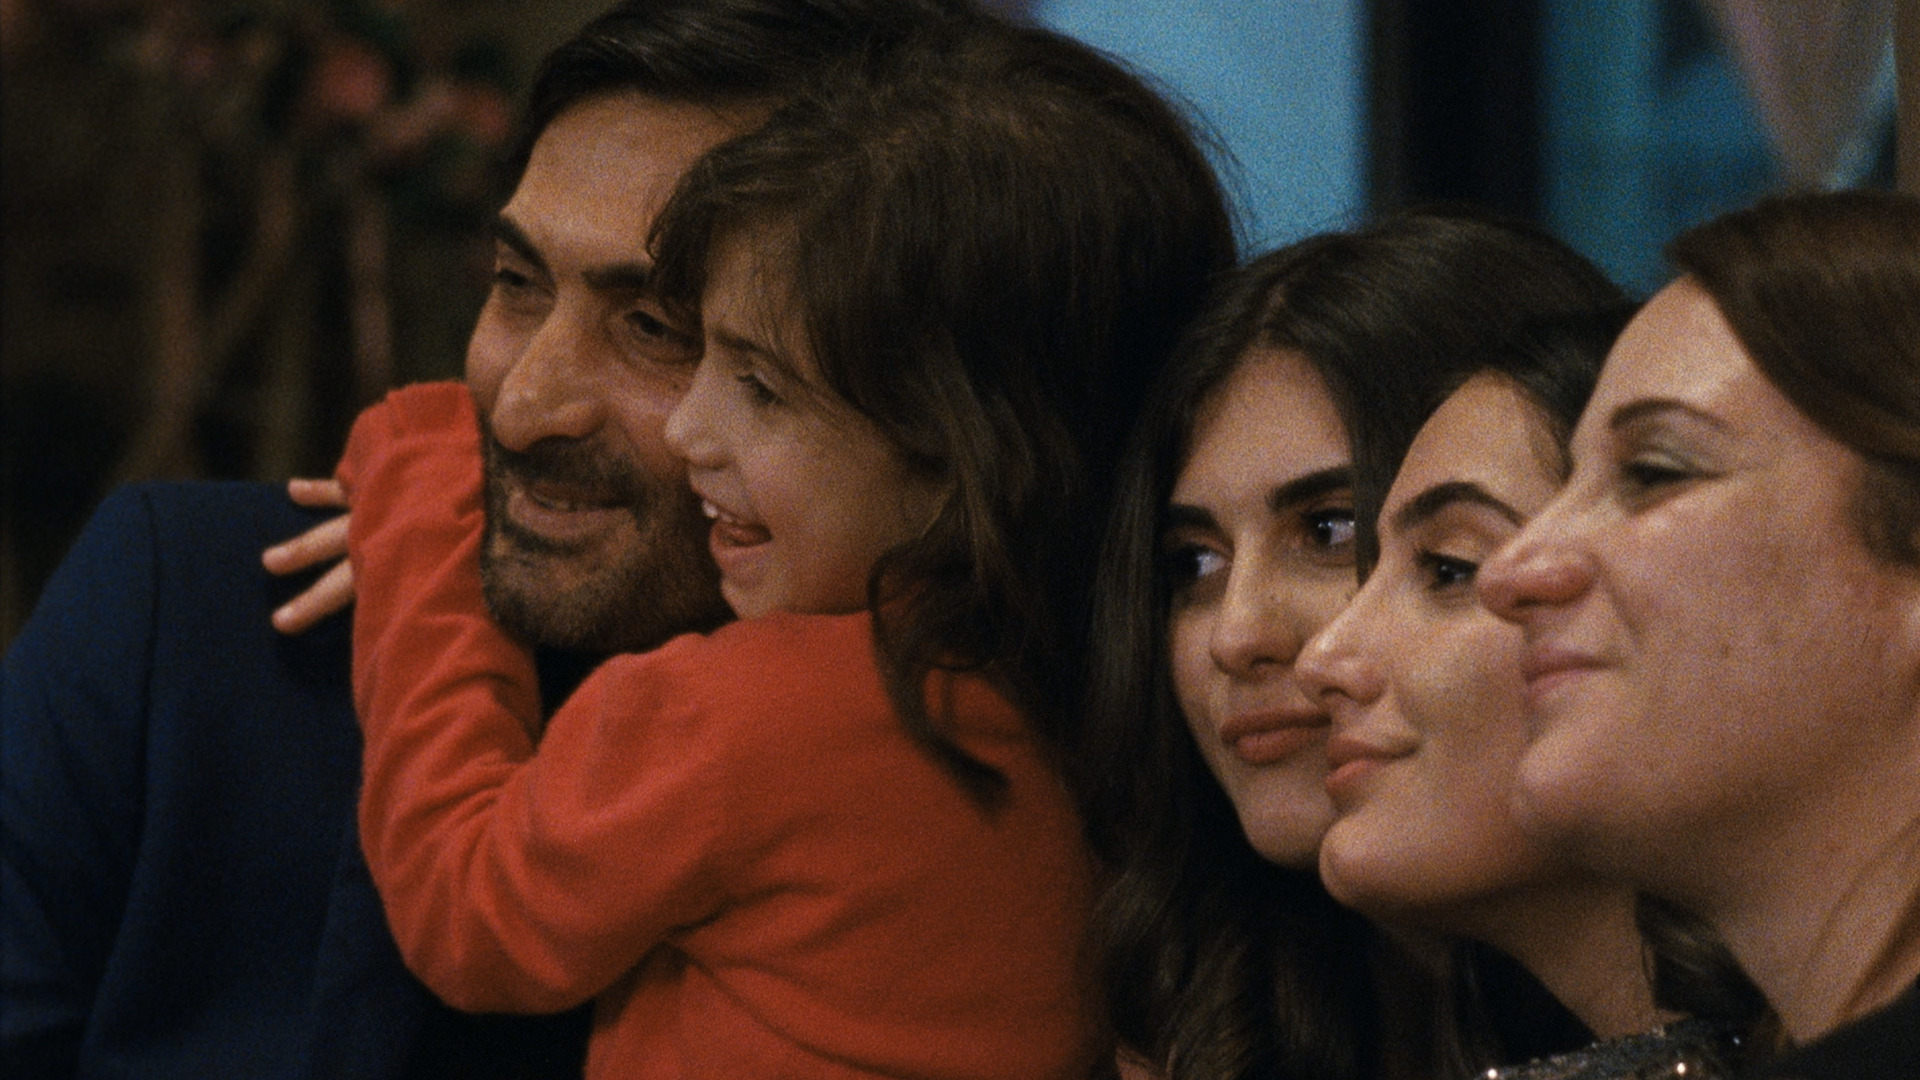 La famiglia di Chiara nel film A Chiara di Jonas Carpignano ©Stayblack Productions